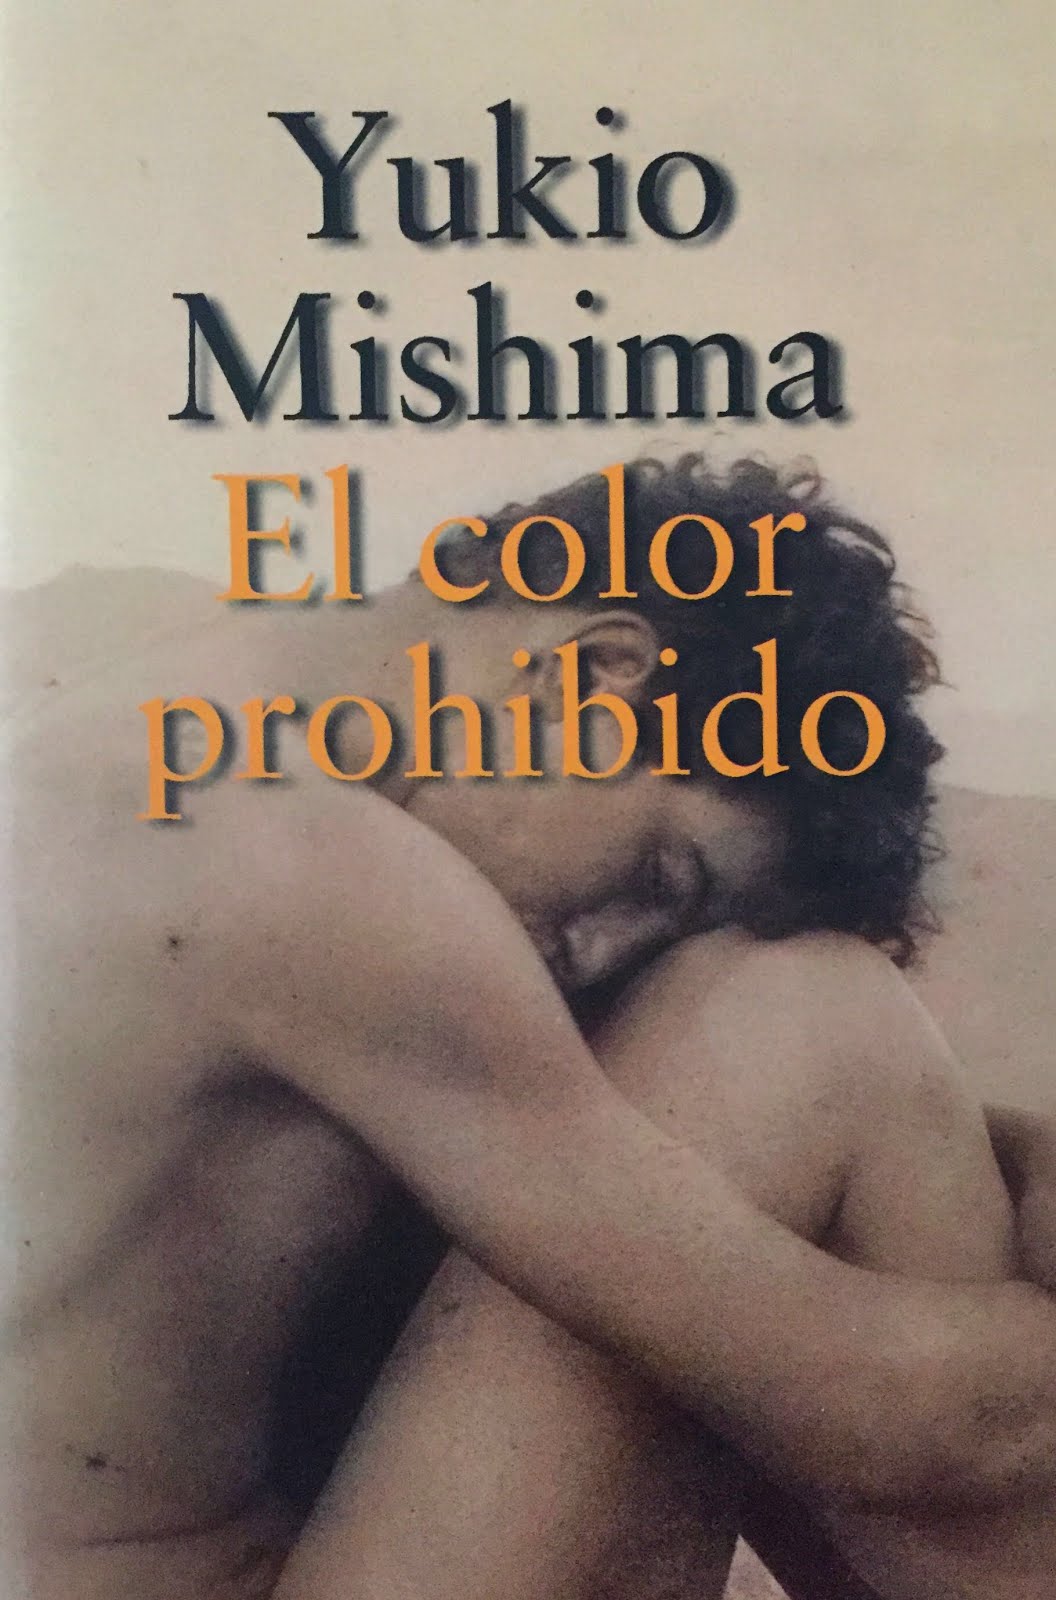 Edición española, Alianza Literaria